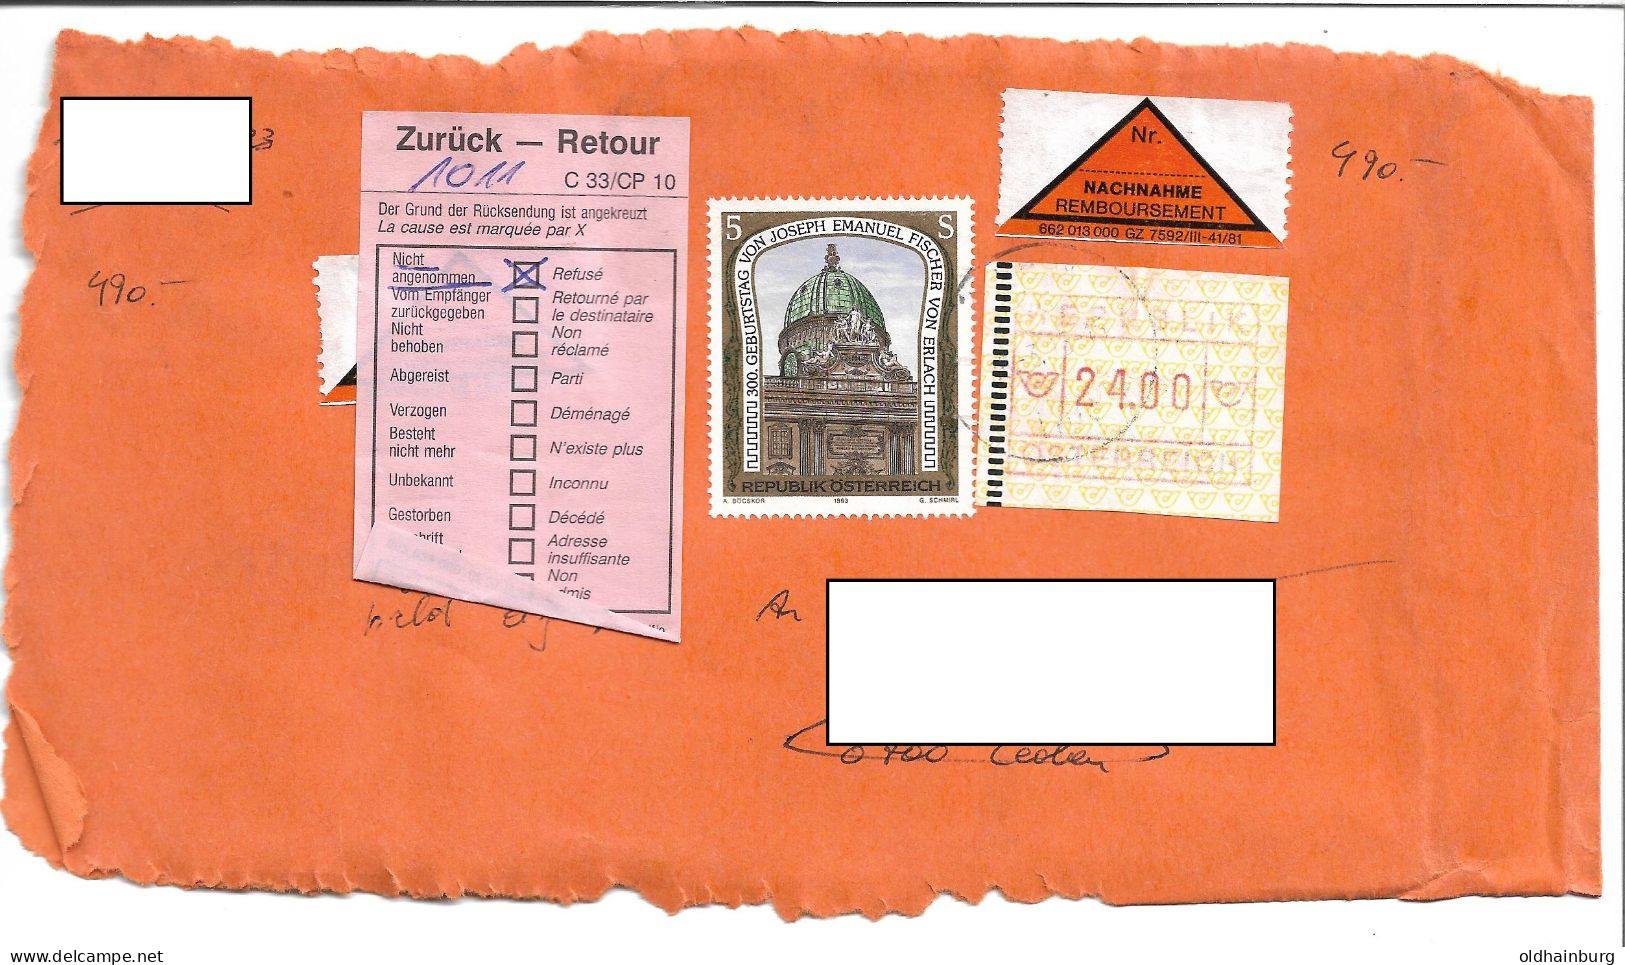 1615s: Österreich- ATM Ausgabe II Aus 1988: Briefstück Mit Echtgelaufener 24.00 ÖS - Machine Labels [ATM]